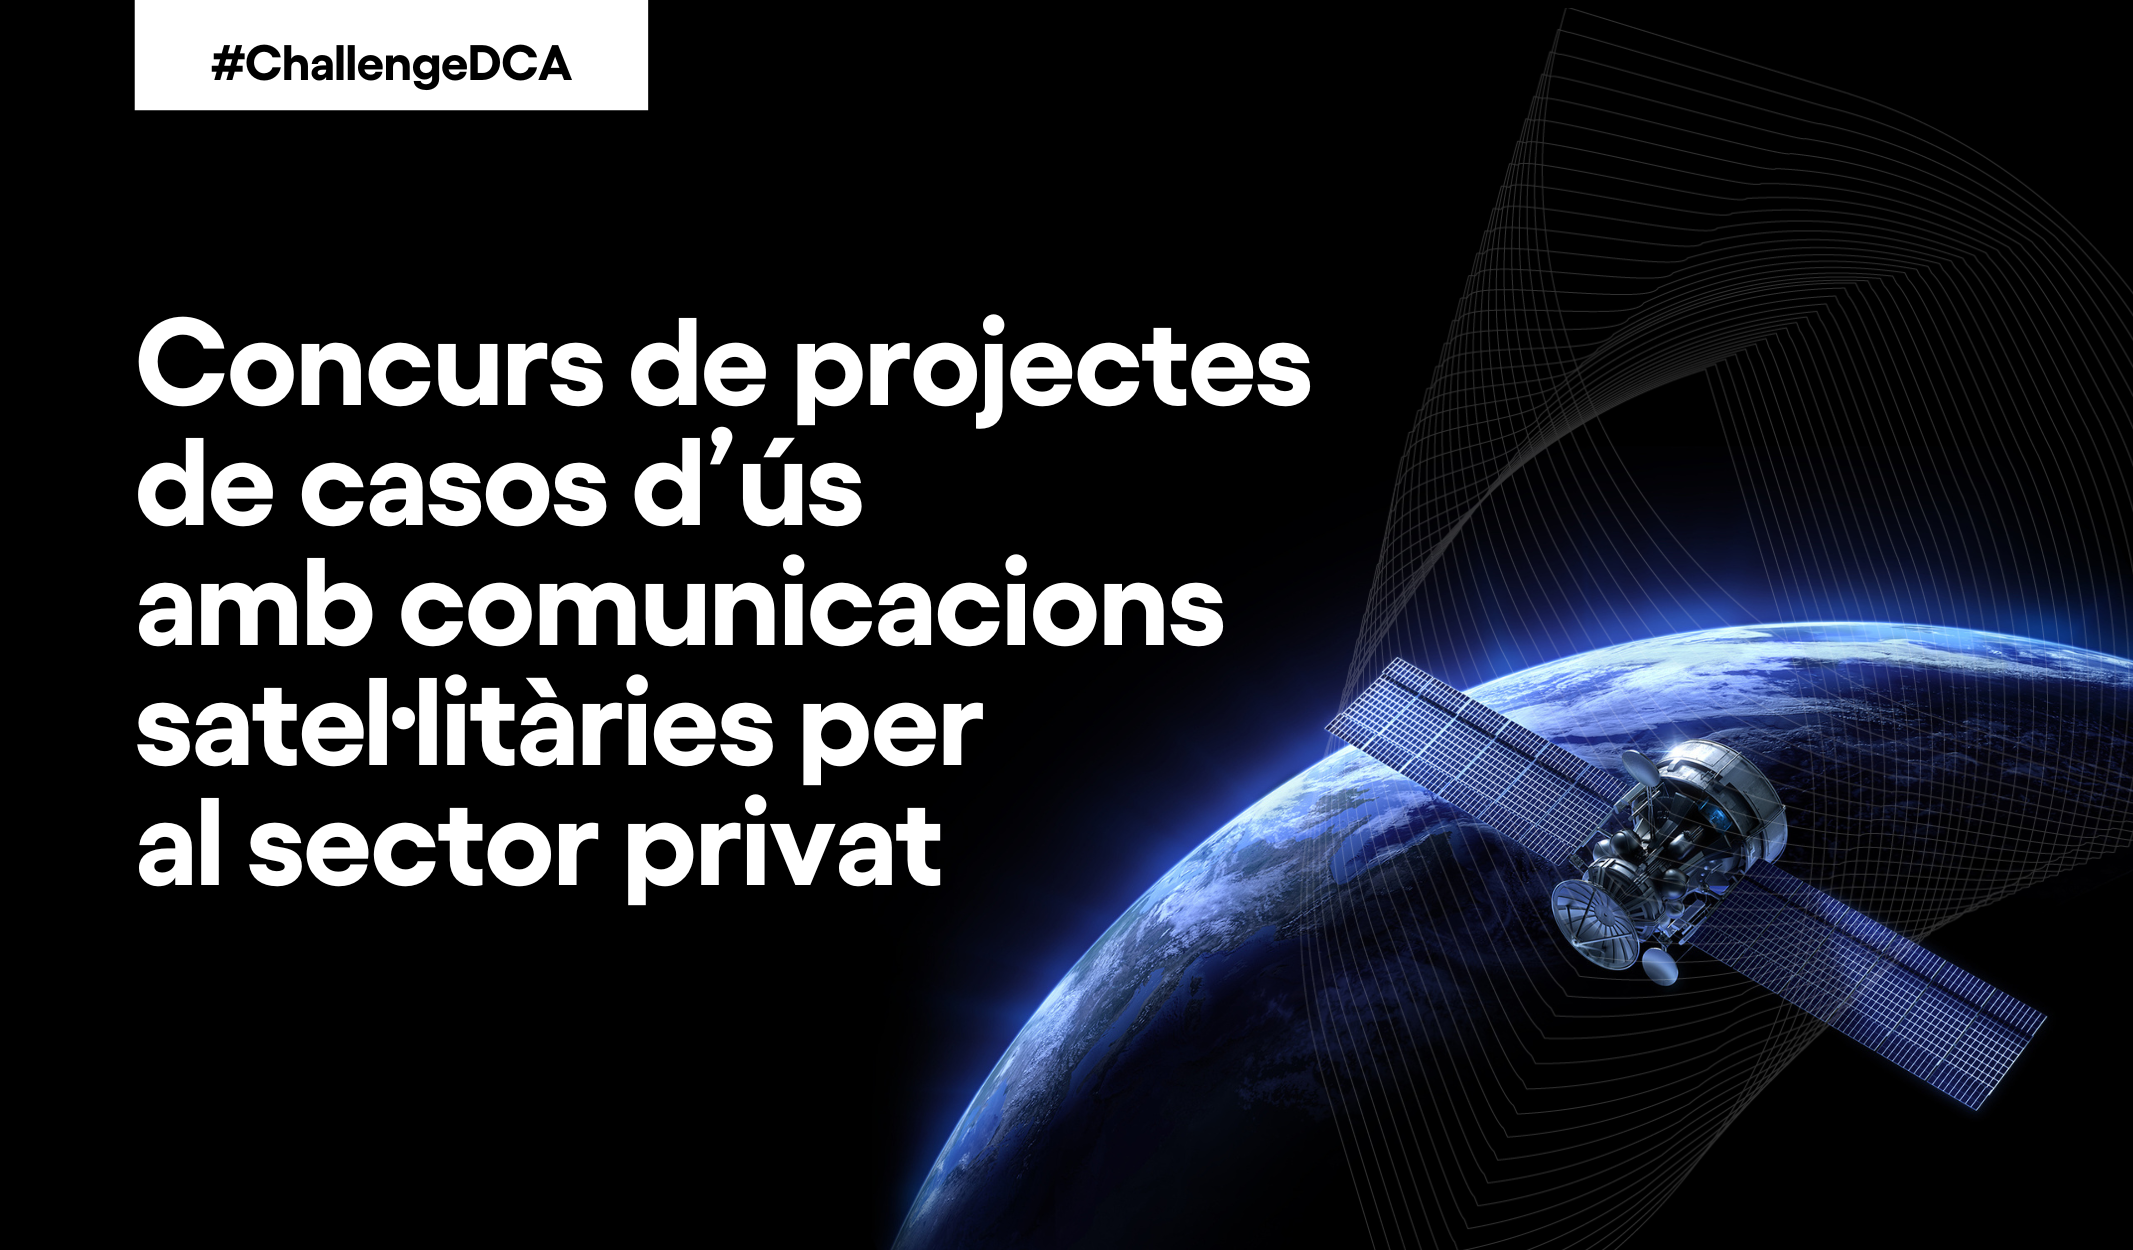 ChallengeDCA: Concurso de proyectos de casos de uso con comunicaciones satelitarias para el sector privado